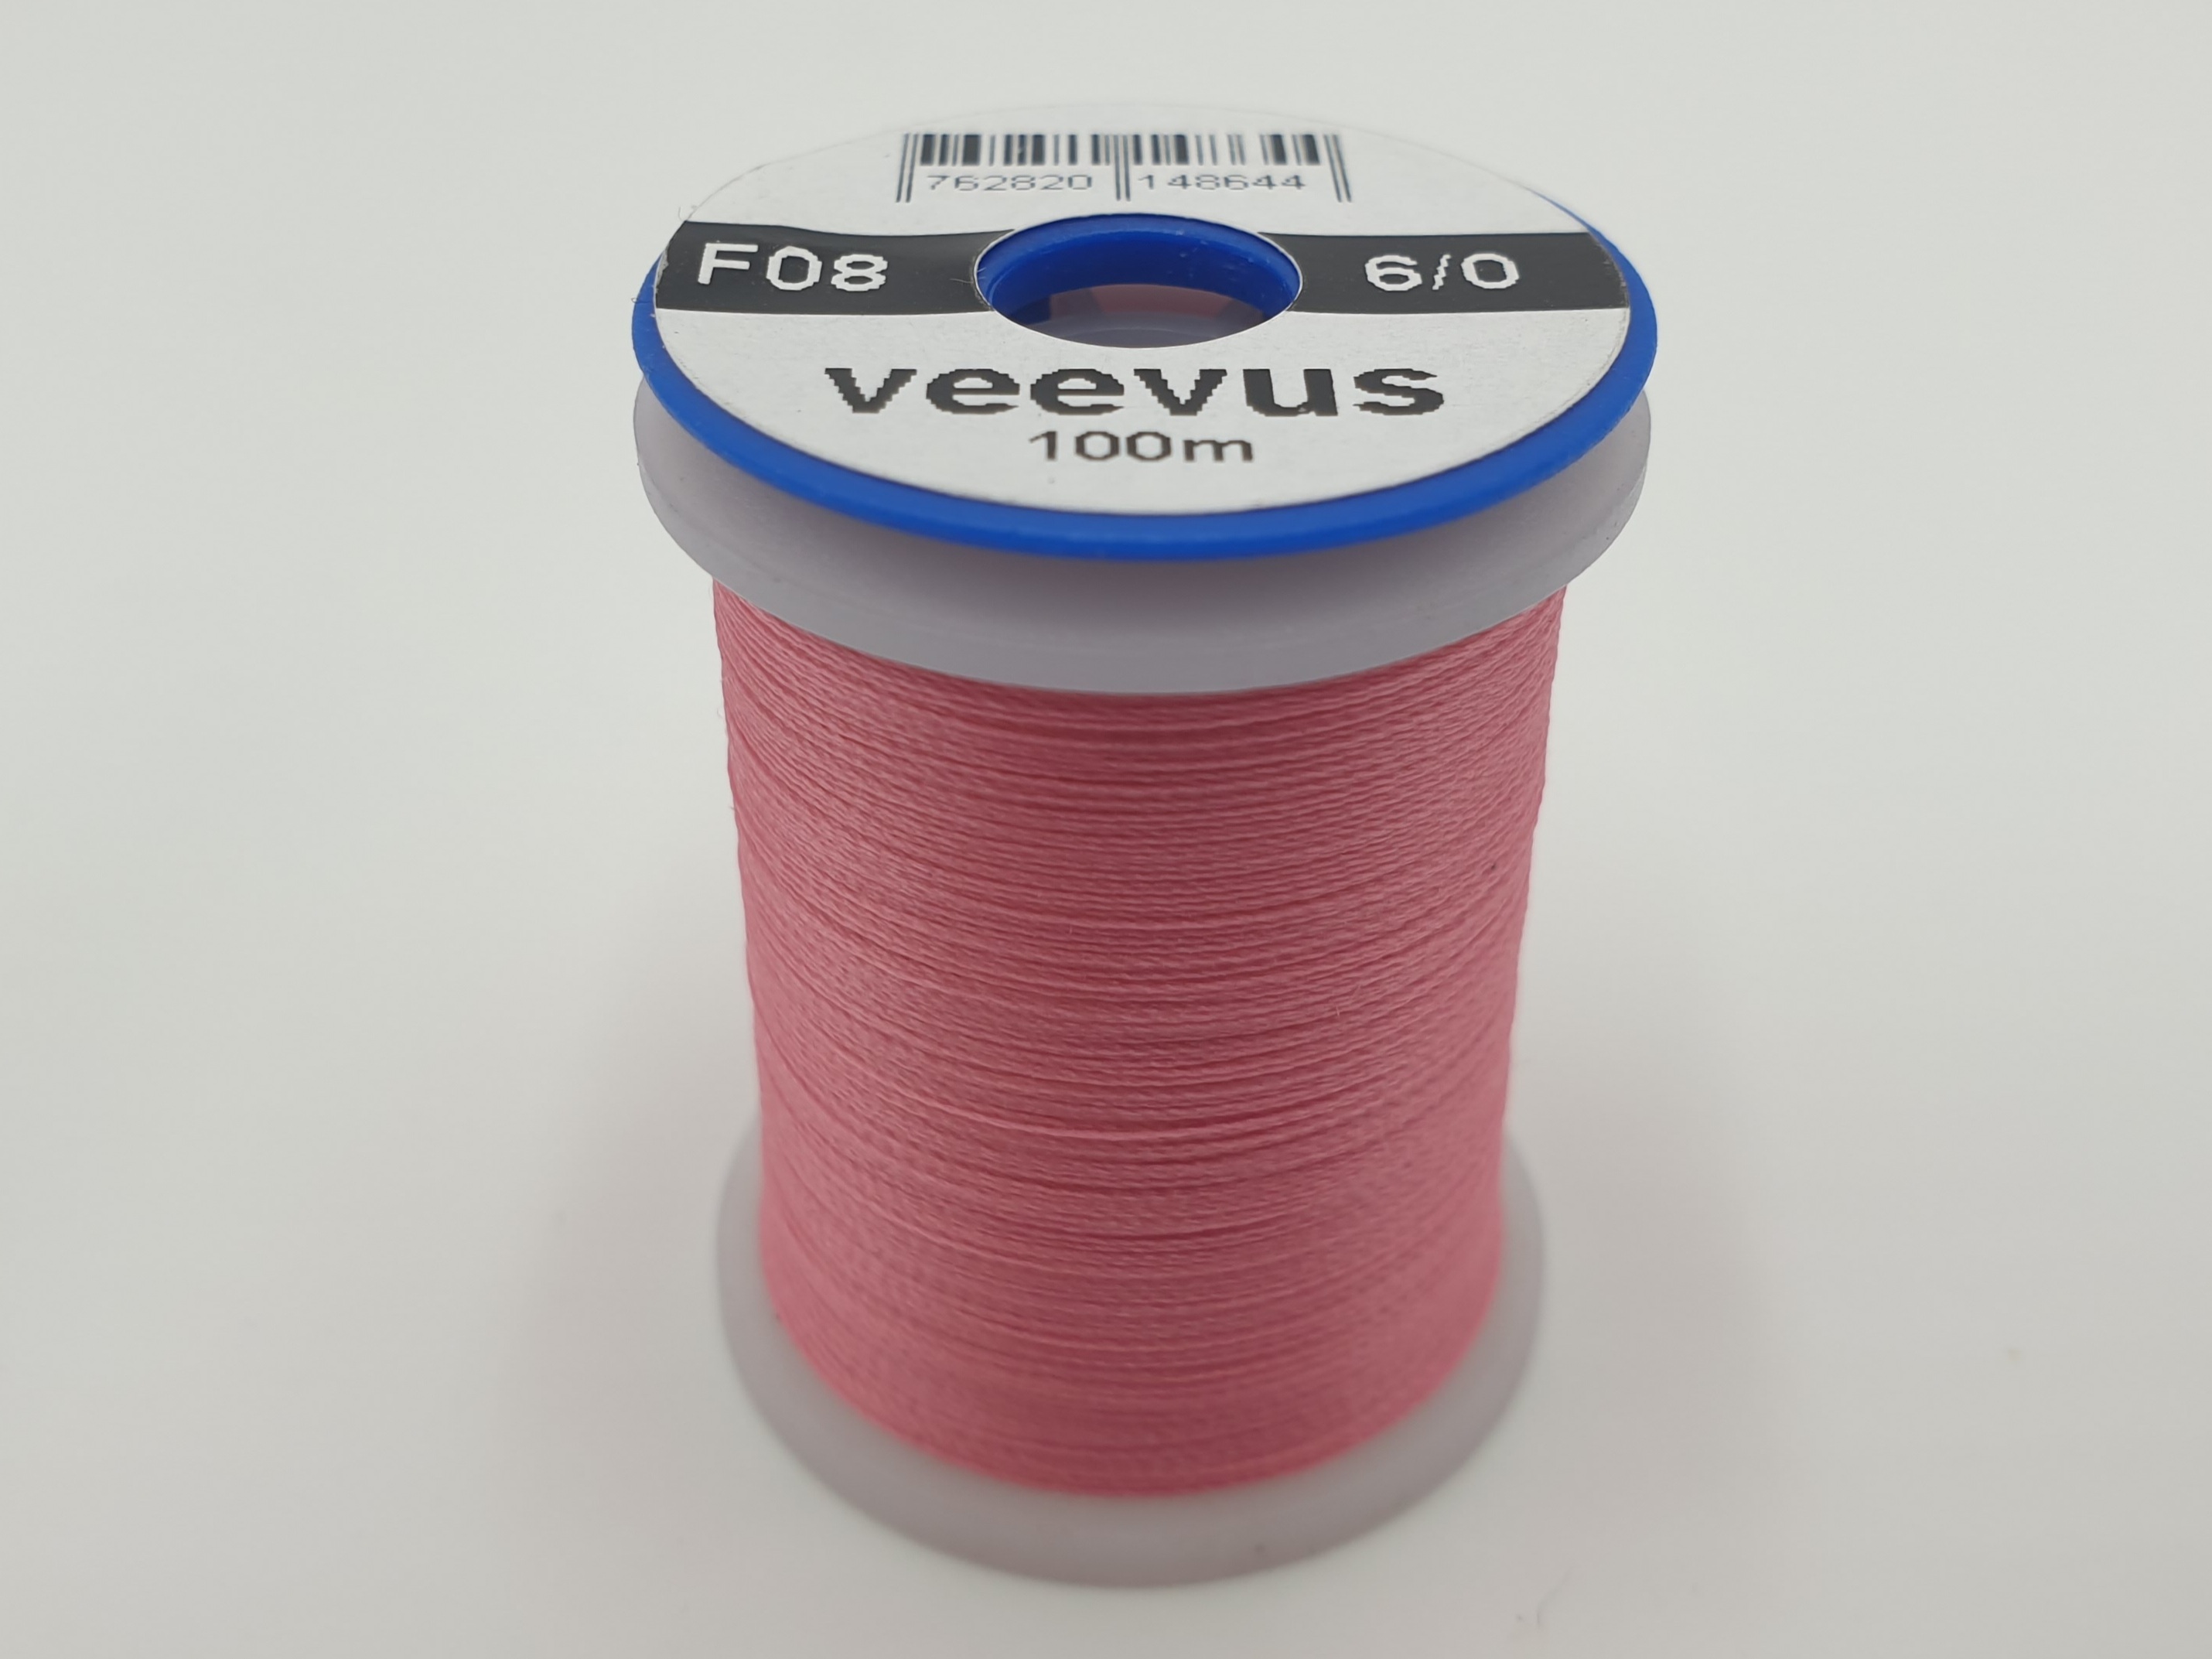 Veevus 6/0 Pink F08